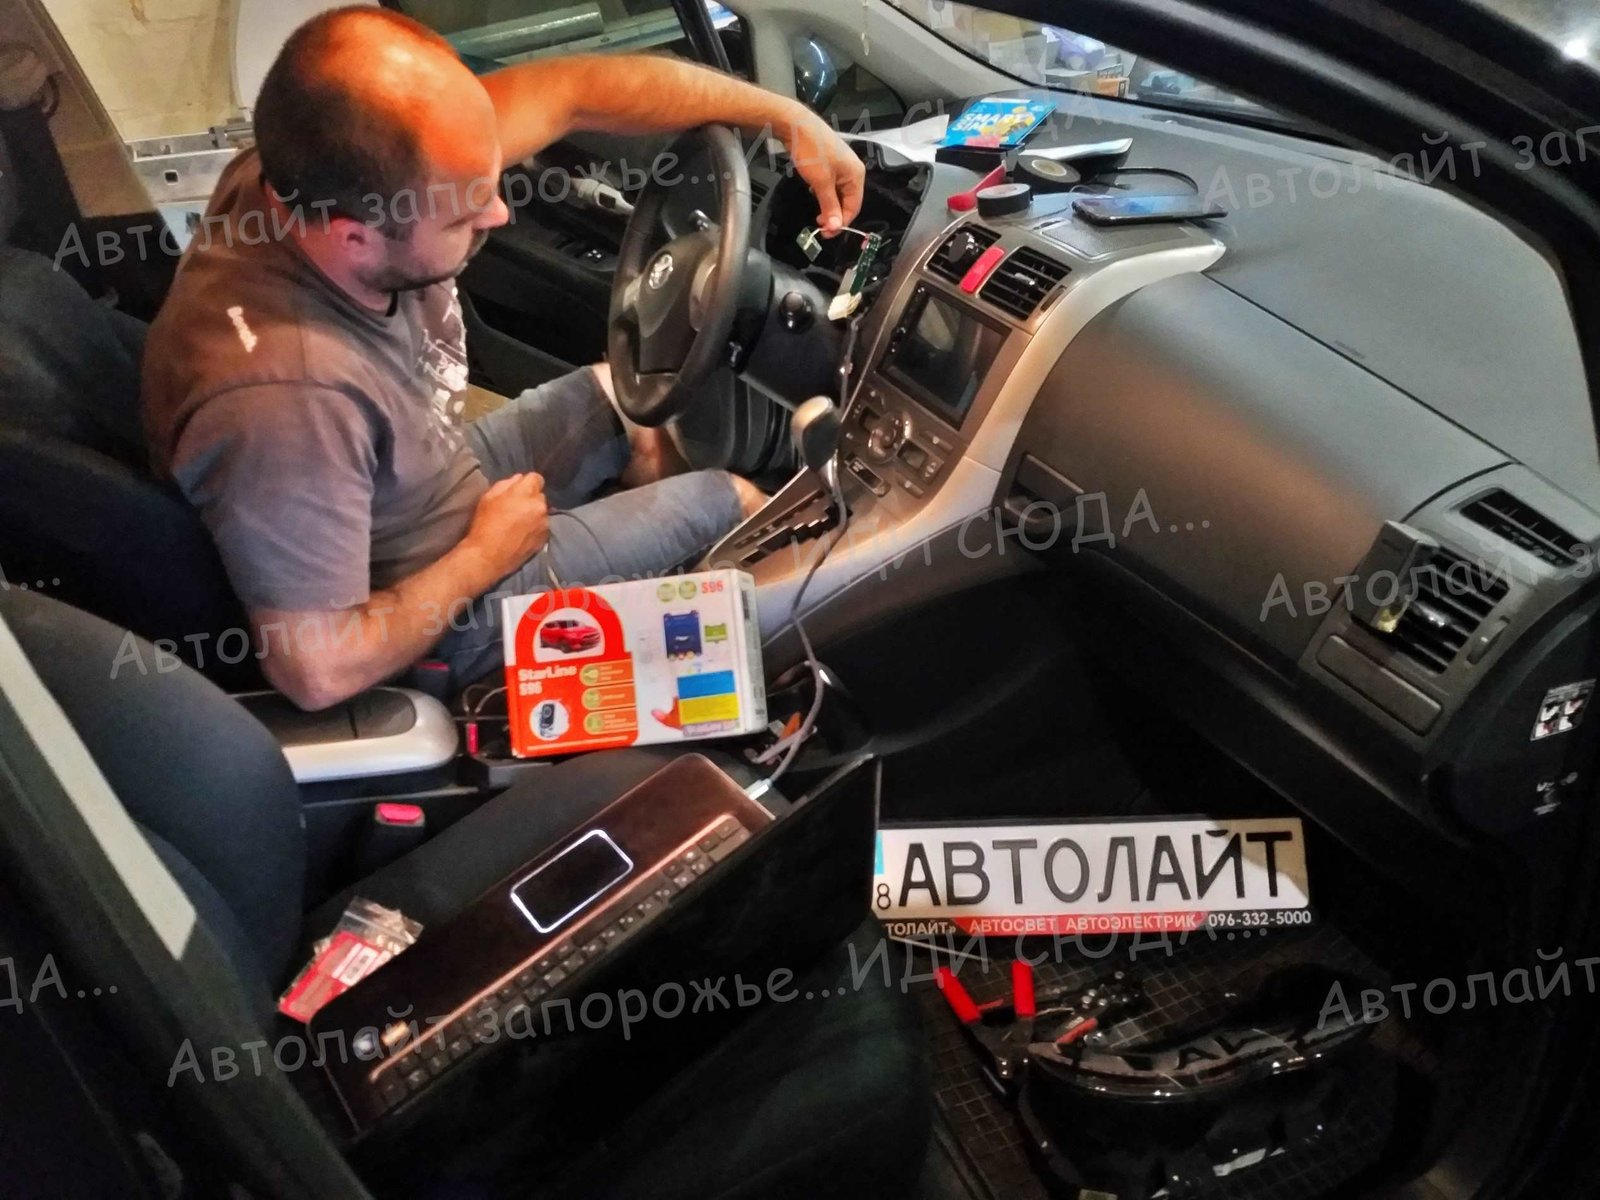 Фотогалерея автосигнализация 49 🚩AVTOLIGHT🚩КАЧЕСТВО 💯‼ студия "Автолайт" Качественный автосвет в Запорожье